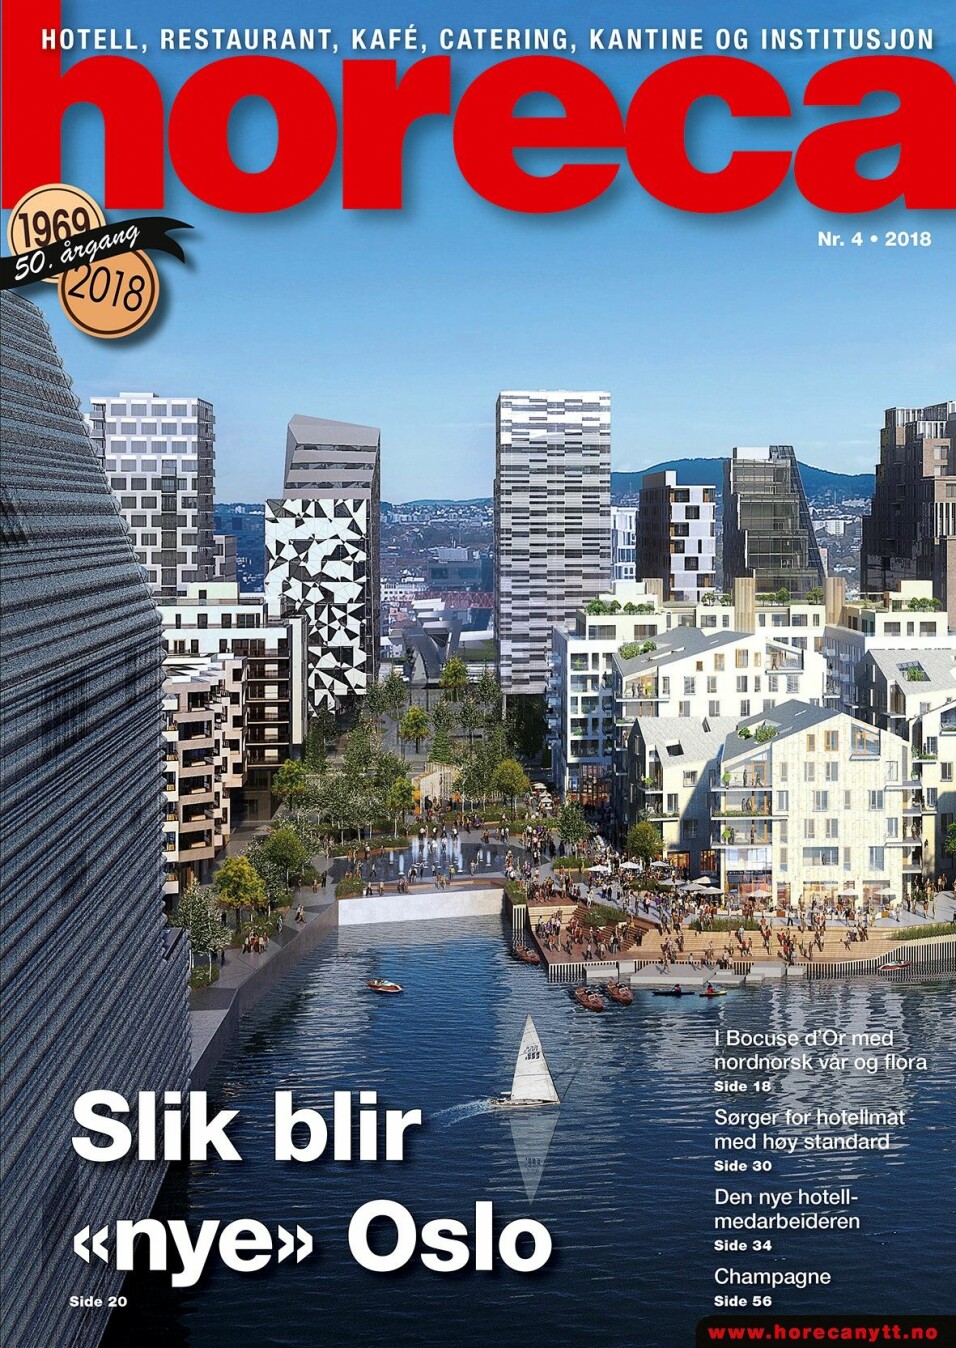 Forsiden på Horeca nummer 4 2018. (Illustrasjon: Via Nova/Oslo S Utvikling/layout: Tove Sissel Larsgård)